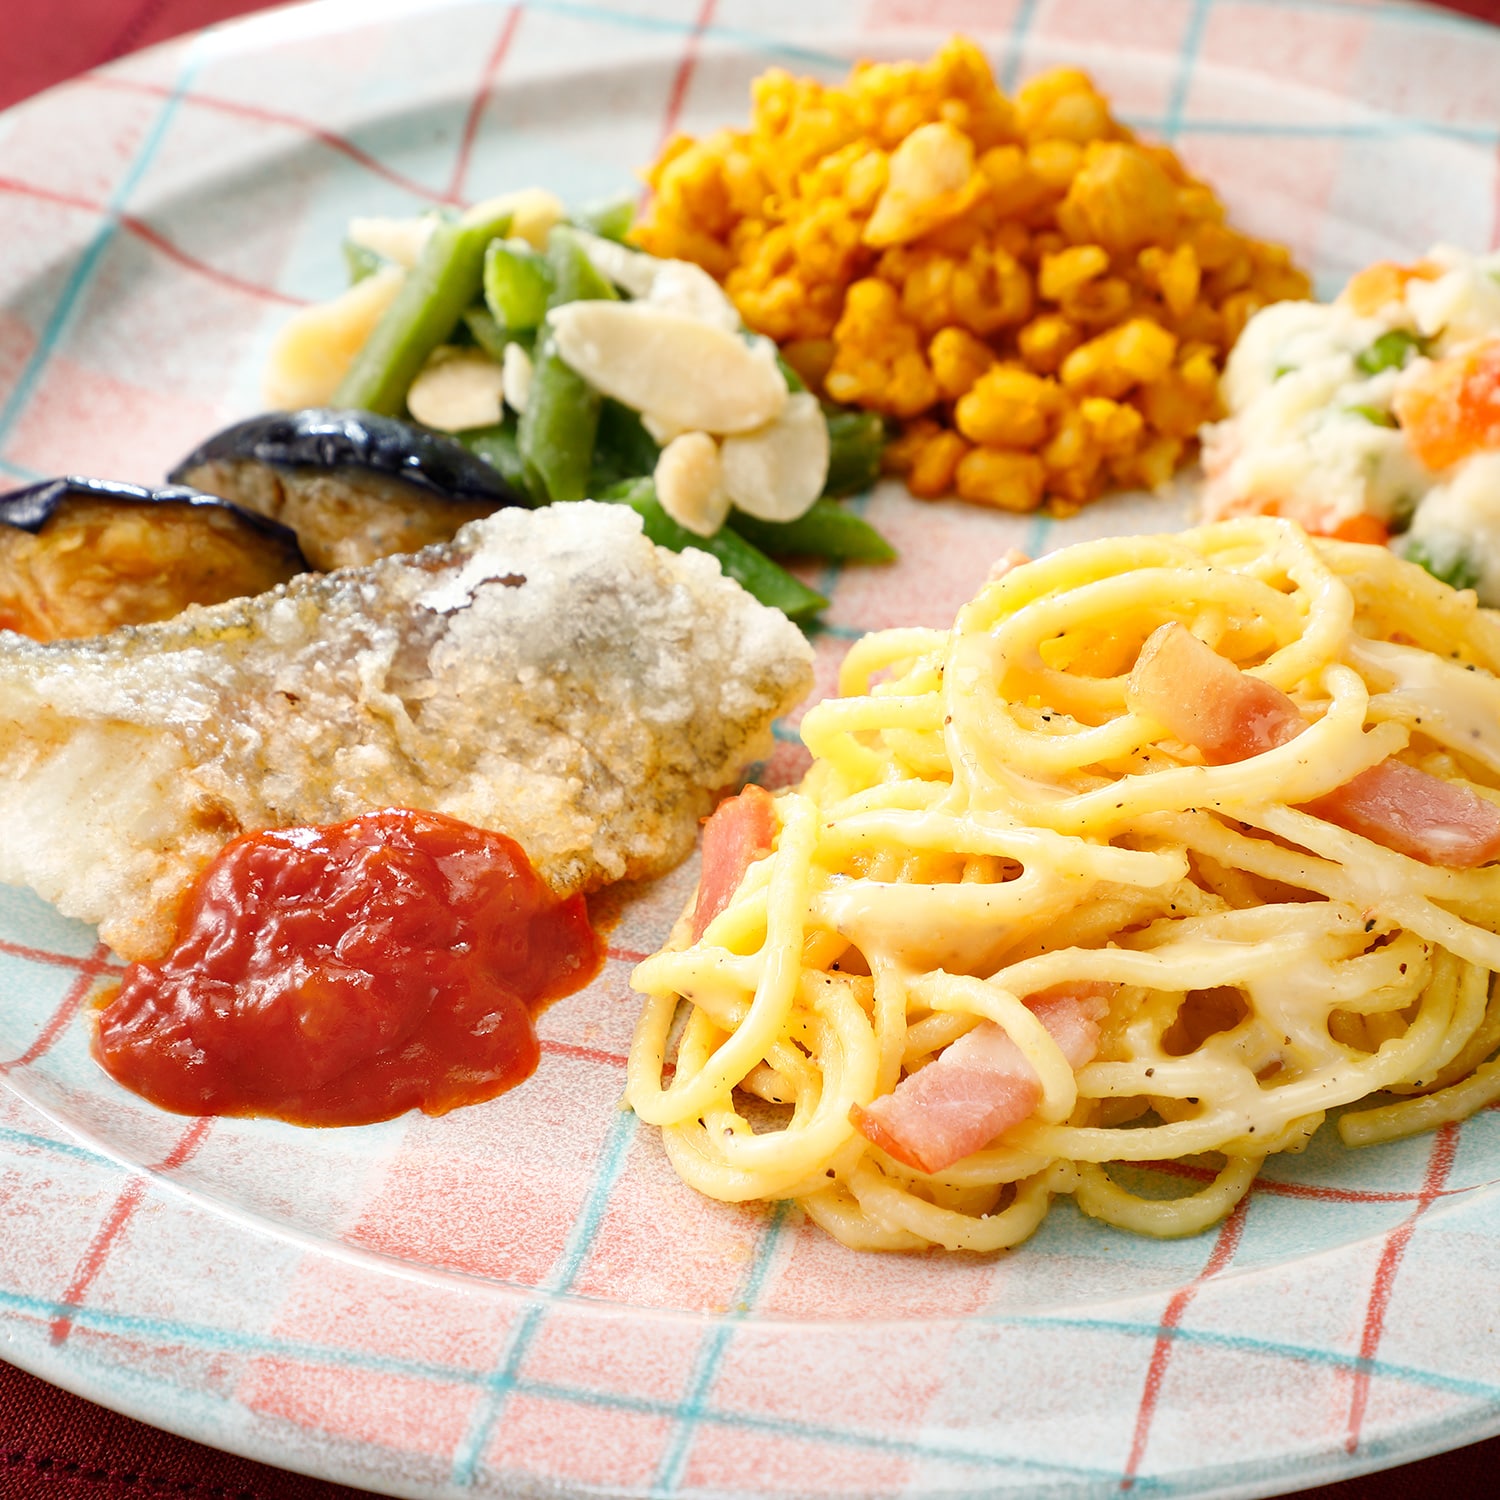 ニチレイのヘルシー食品 健康管理食 ダイエット食ウーディッシュ カルボナーラと白身魚のトマトソース 冷凍 ヘルシー食品のページです